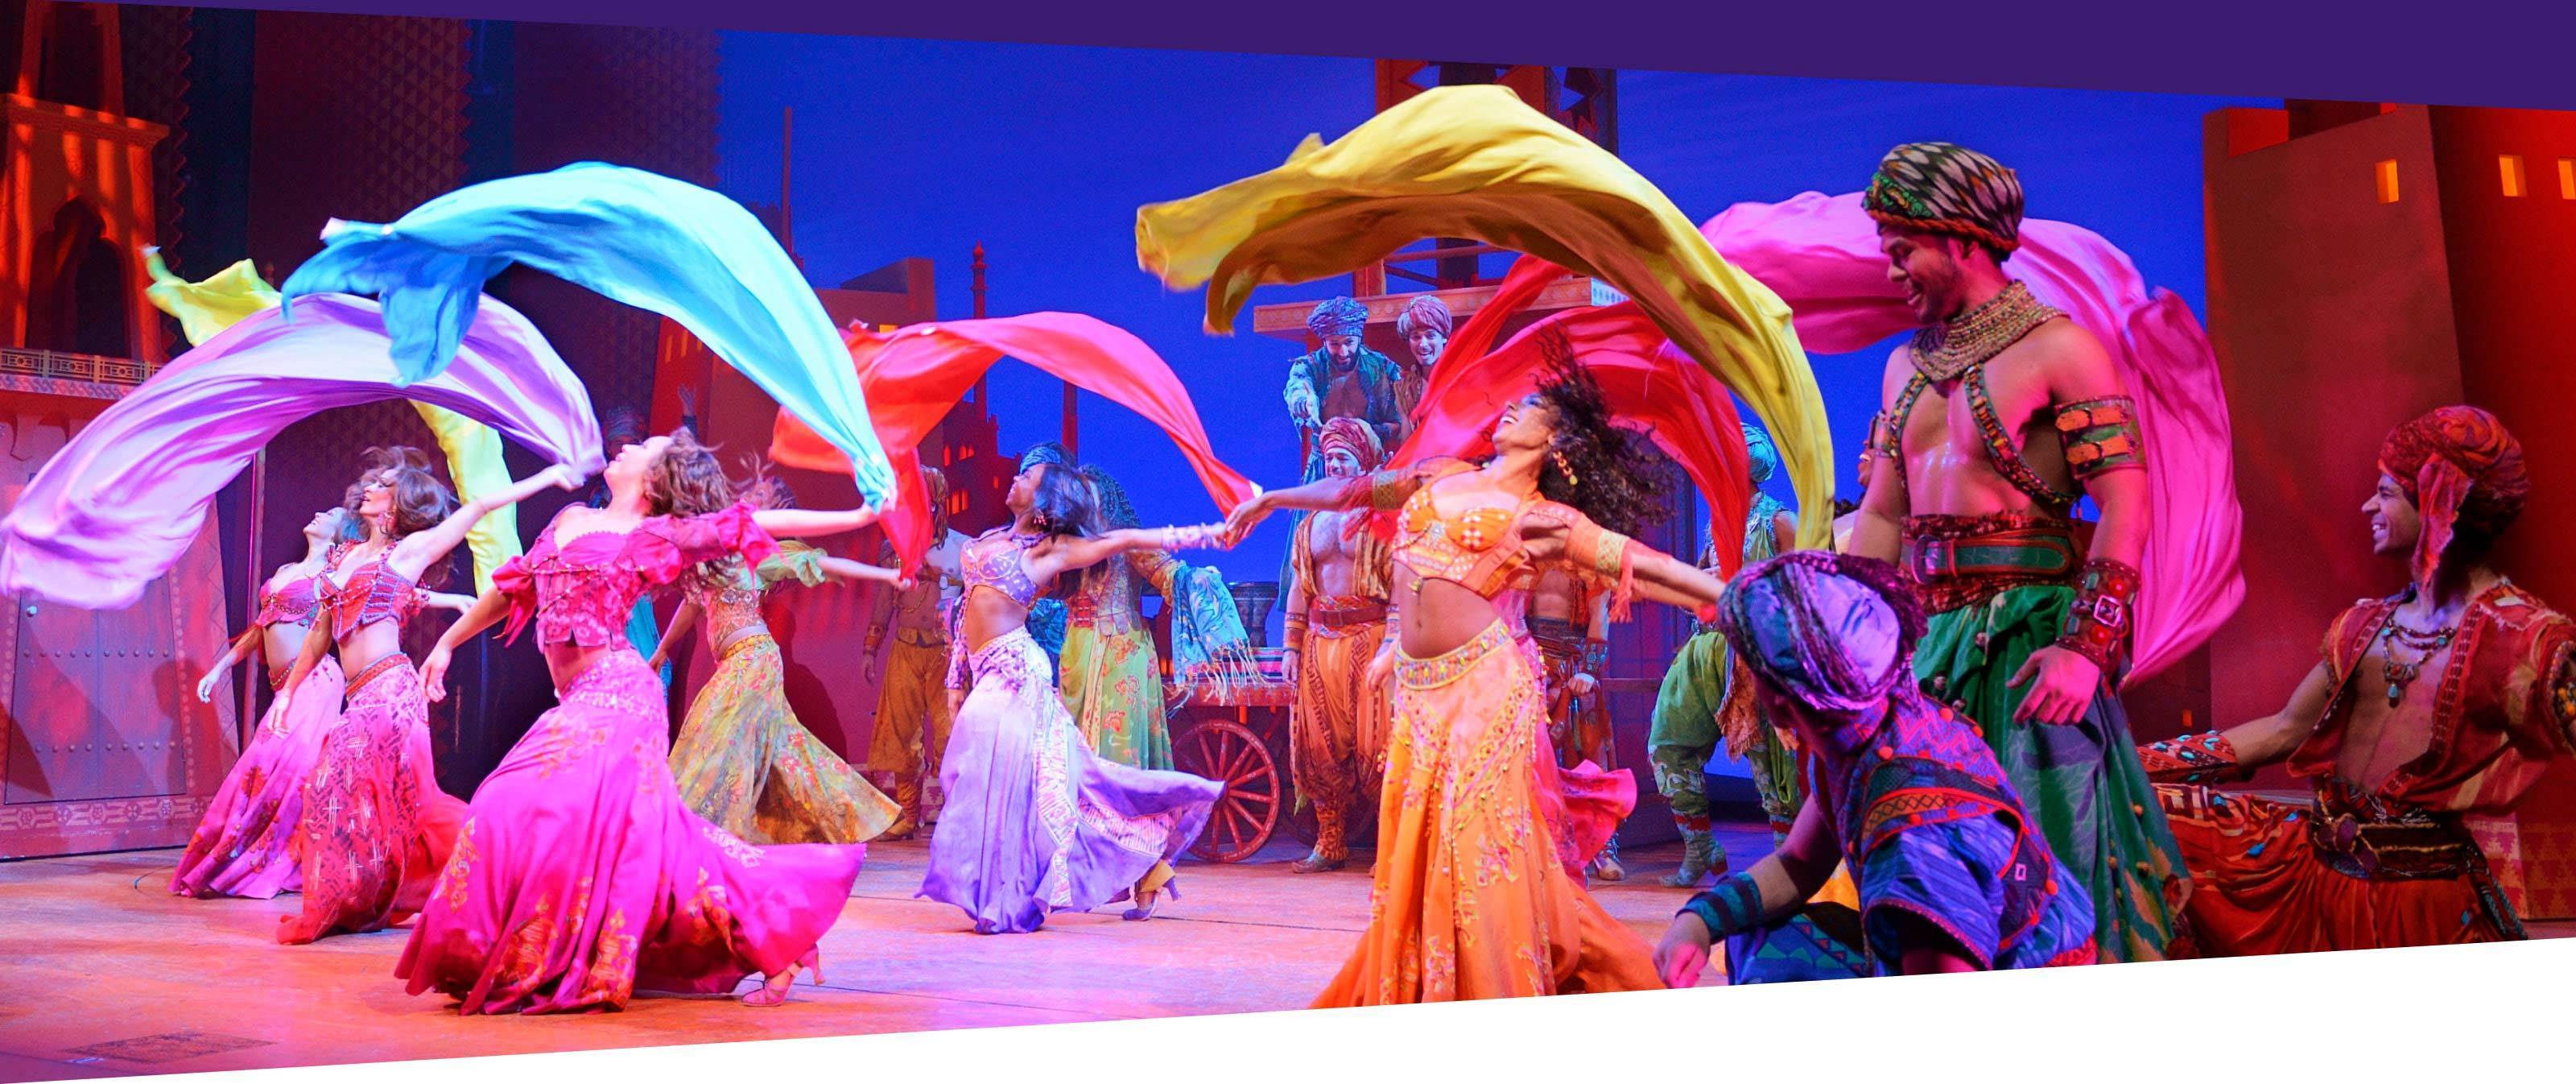 The Aladdin ensemble on stage